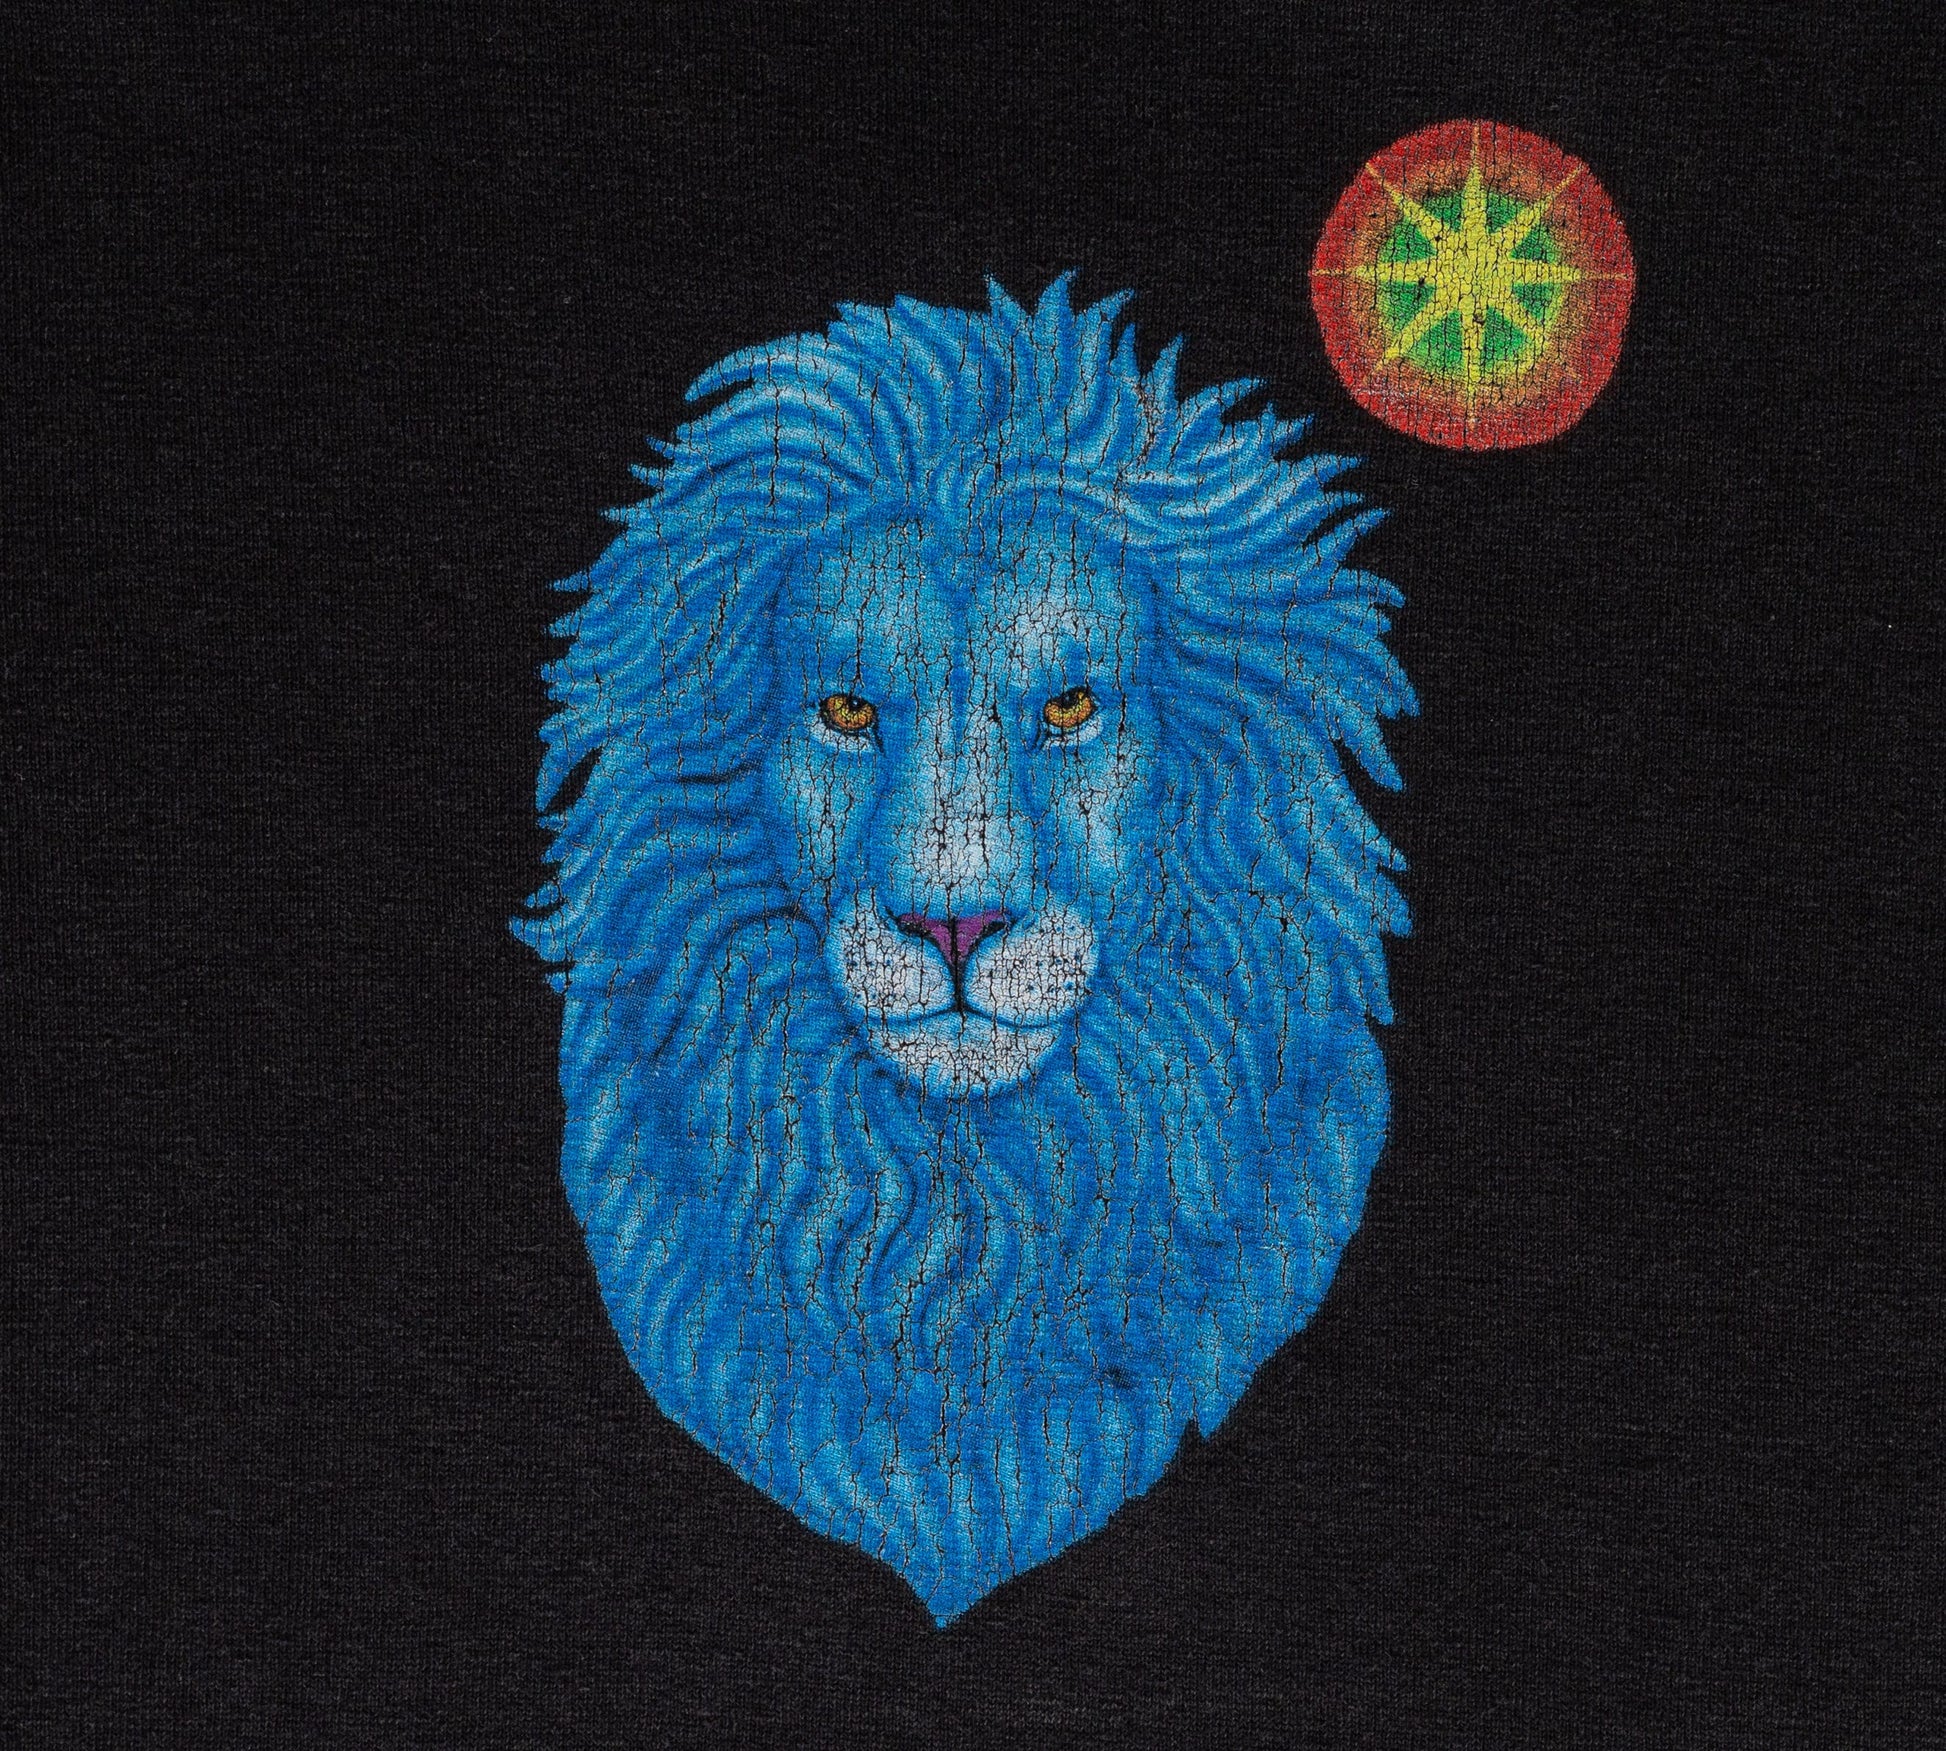 Vintage Mystic Lion T Shirt - XXL 